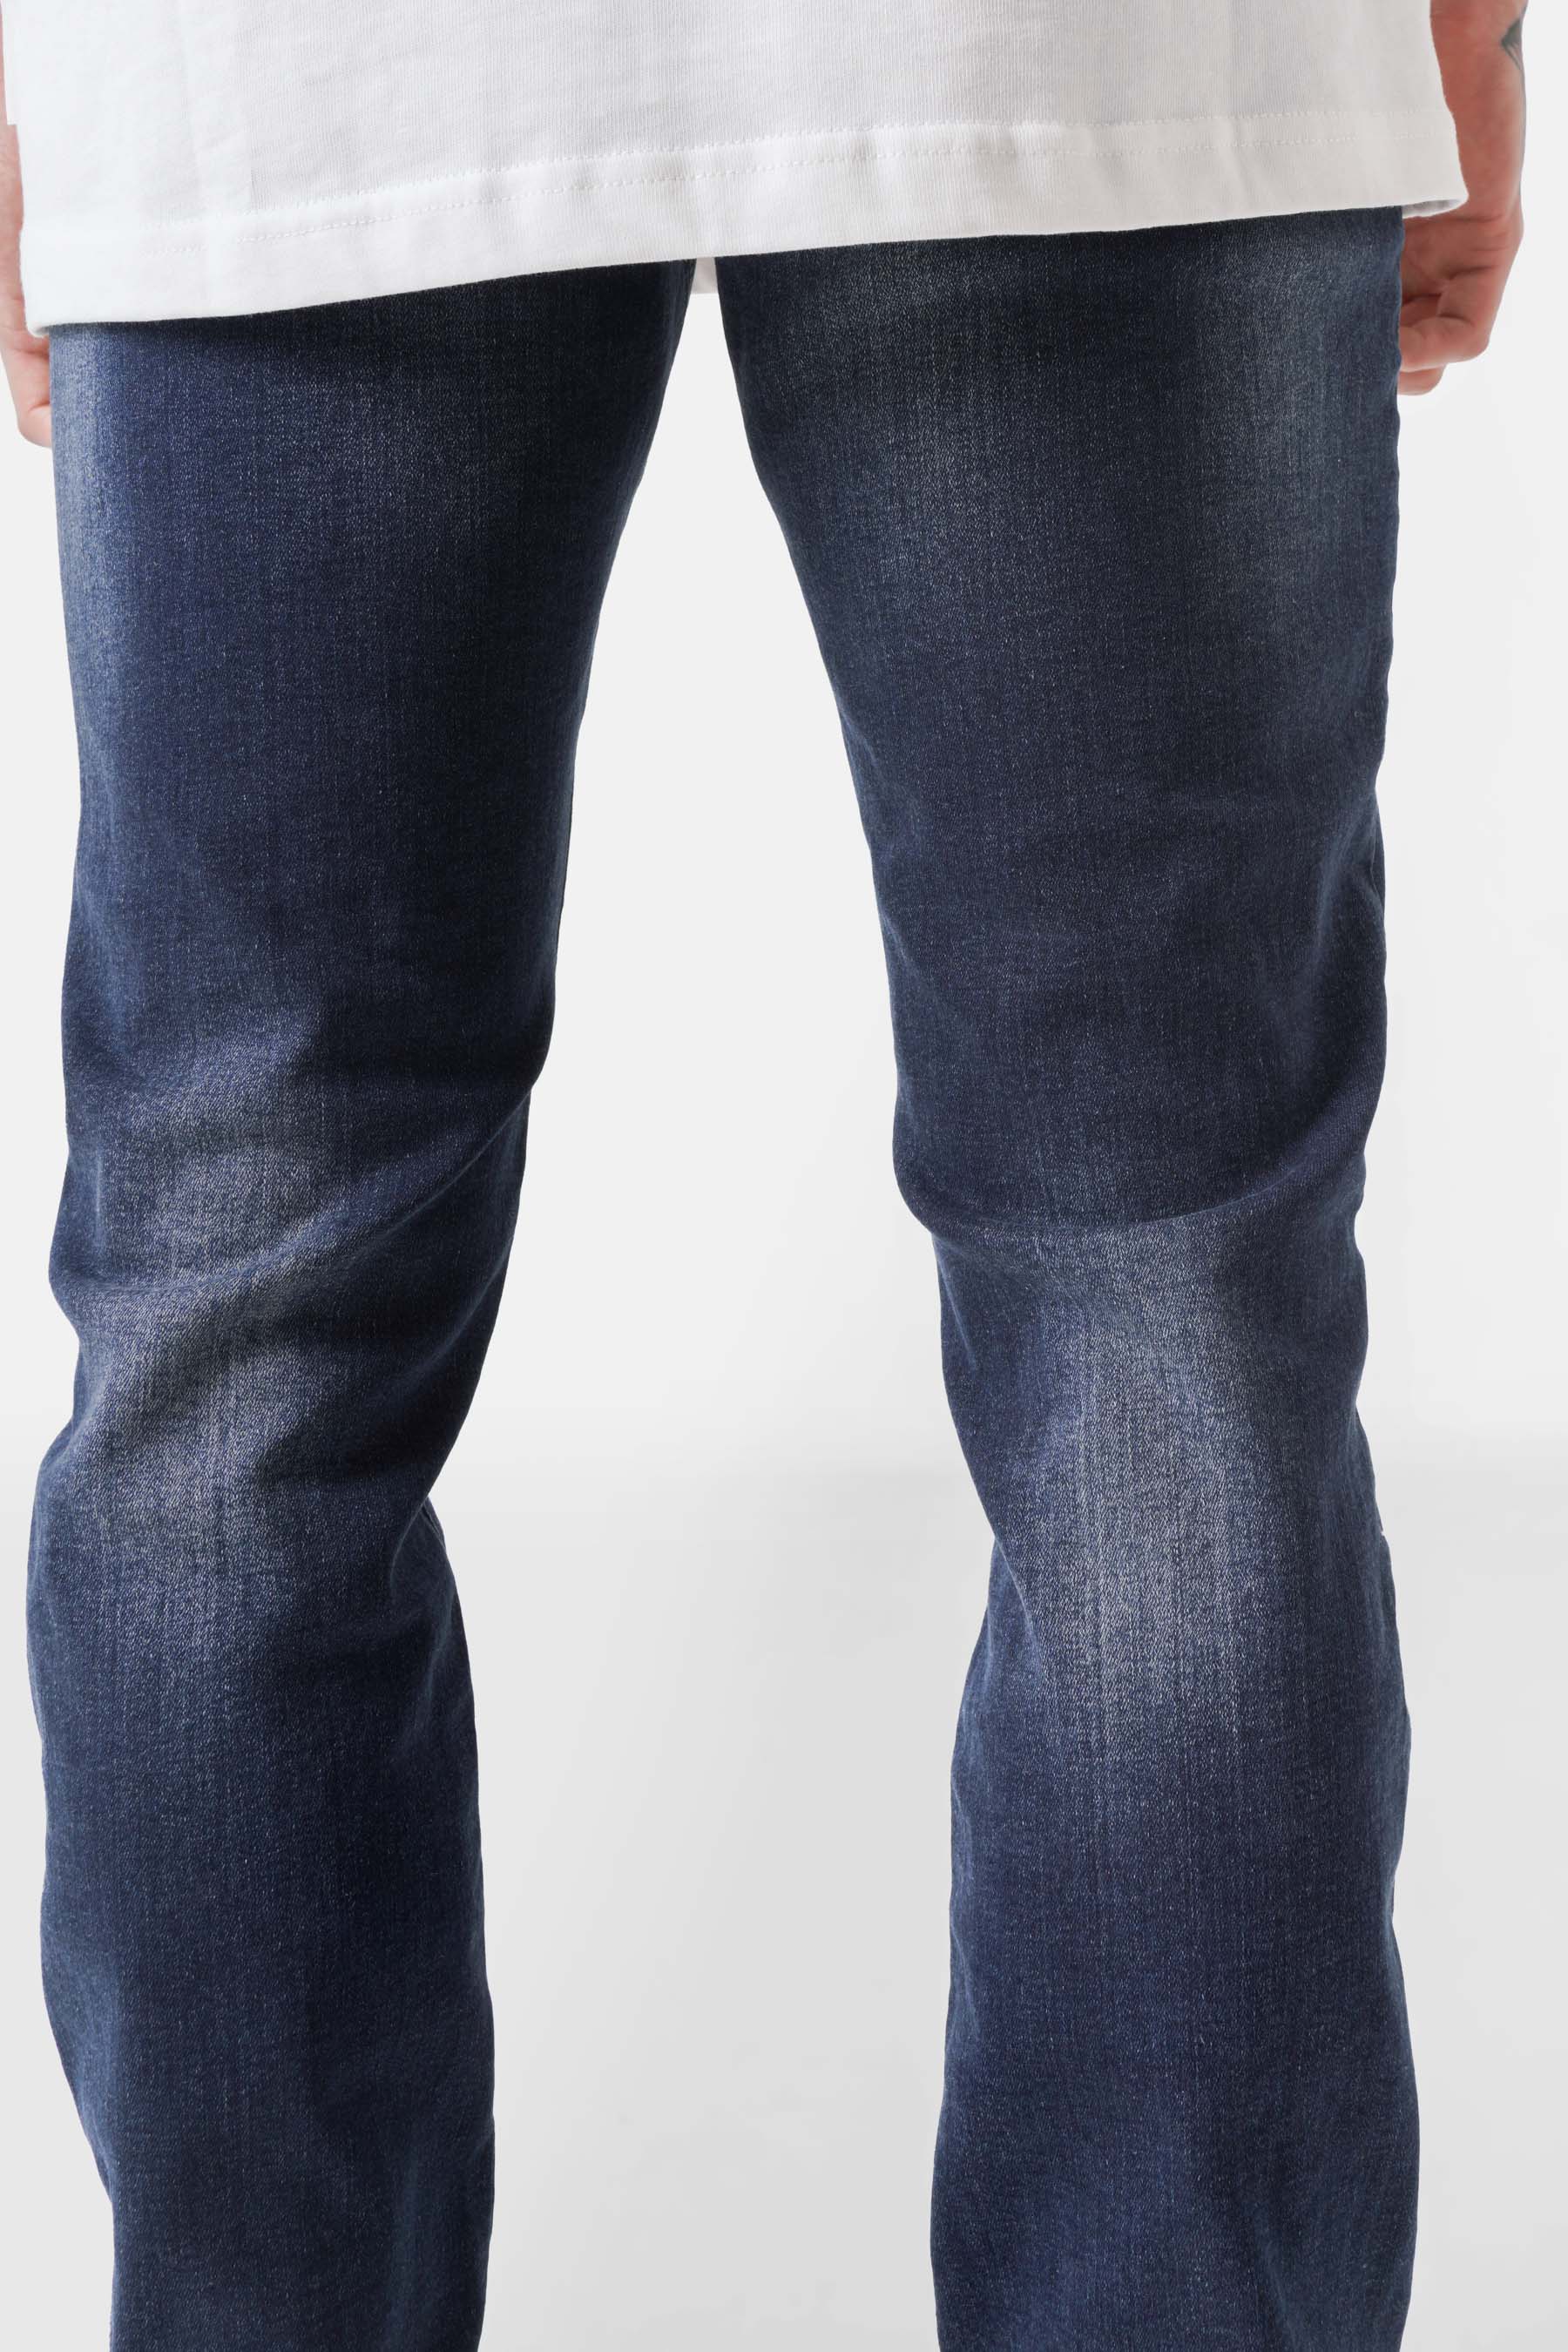 Slim gewaschene Destroyed-Jeans Dunkelblau